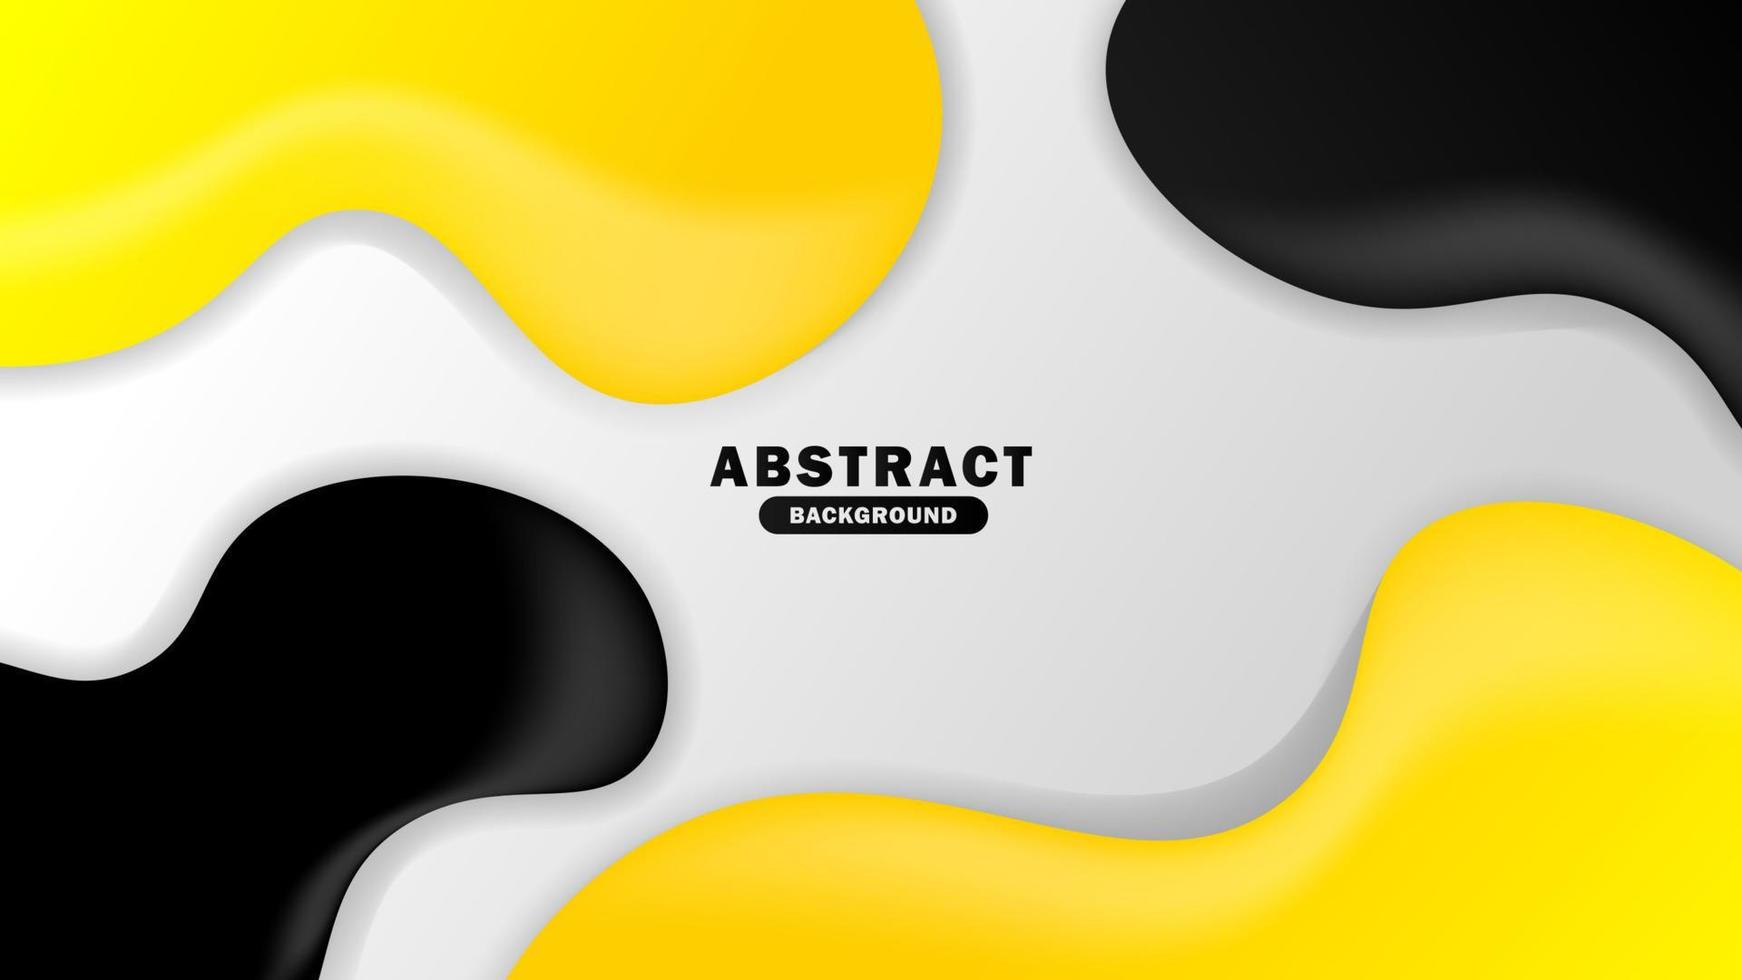 fundo abstrato com modelo fluido simples. ilustração minimalista do vetor de fundo. fundo amarelo, cinza e branco. eps 10